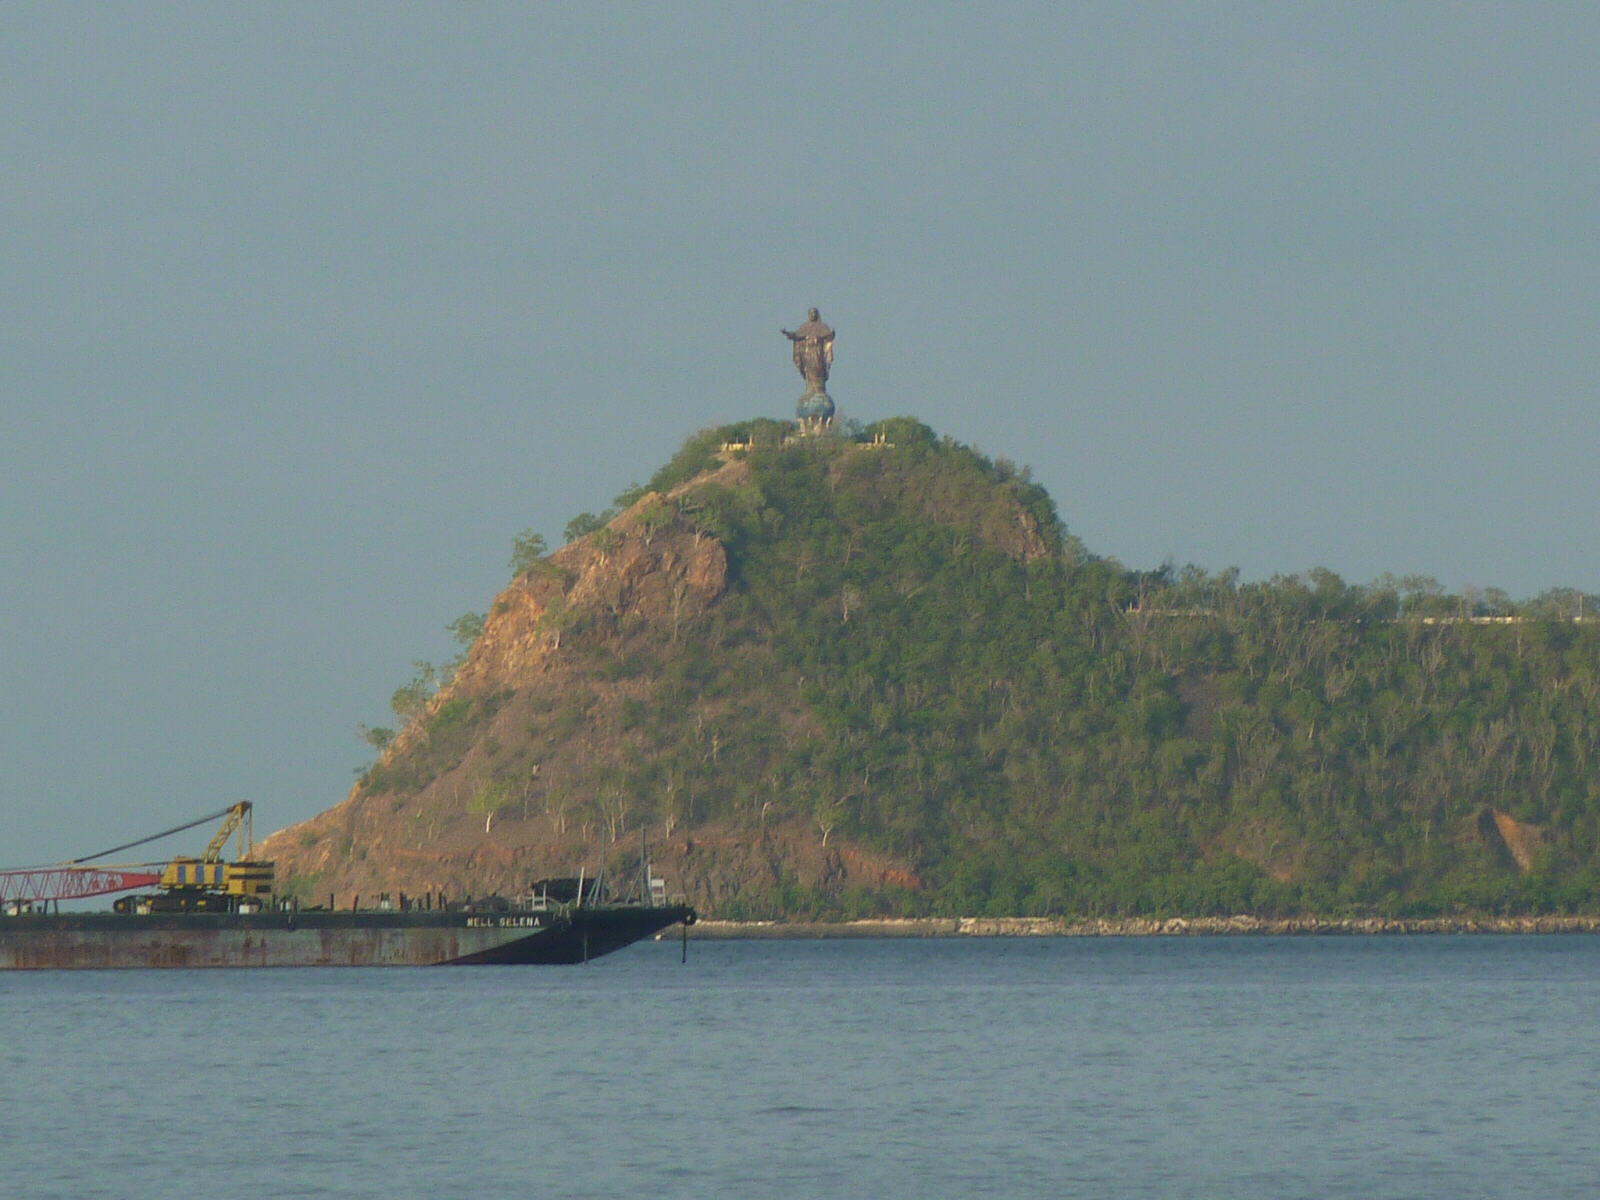 Christo Rei statue at Dili, Timor-Leste (East Timor)